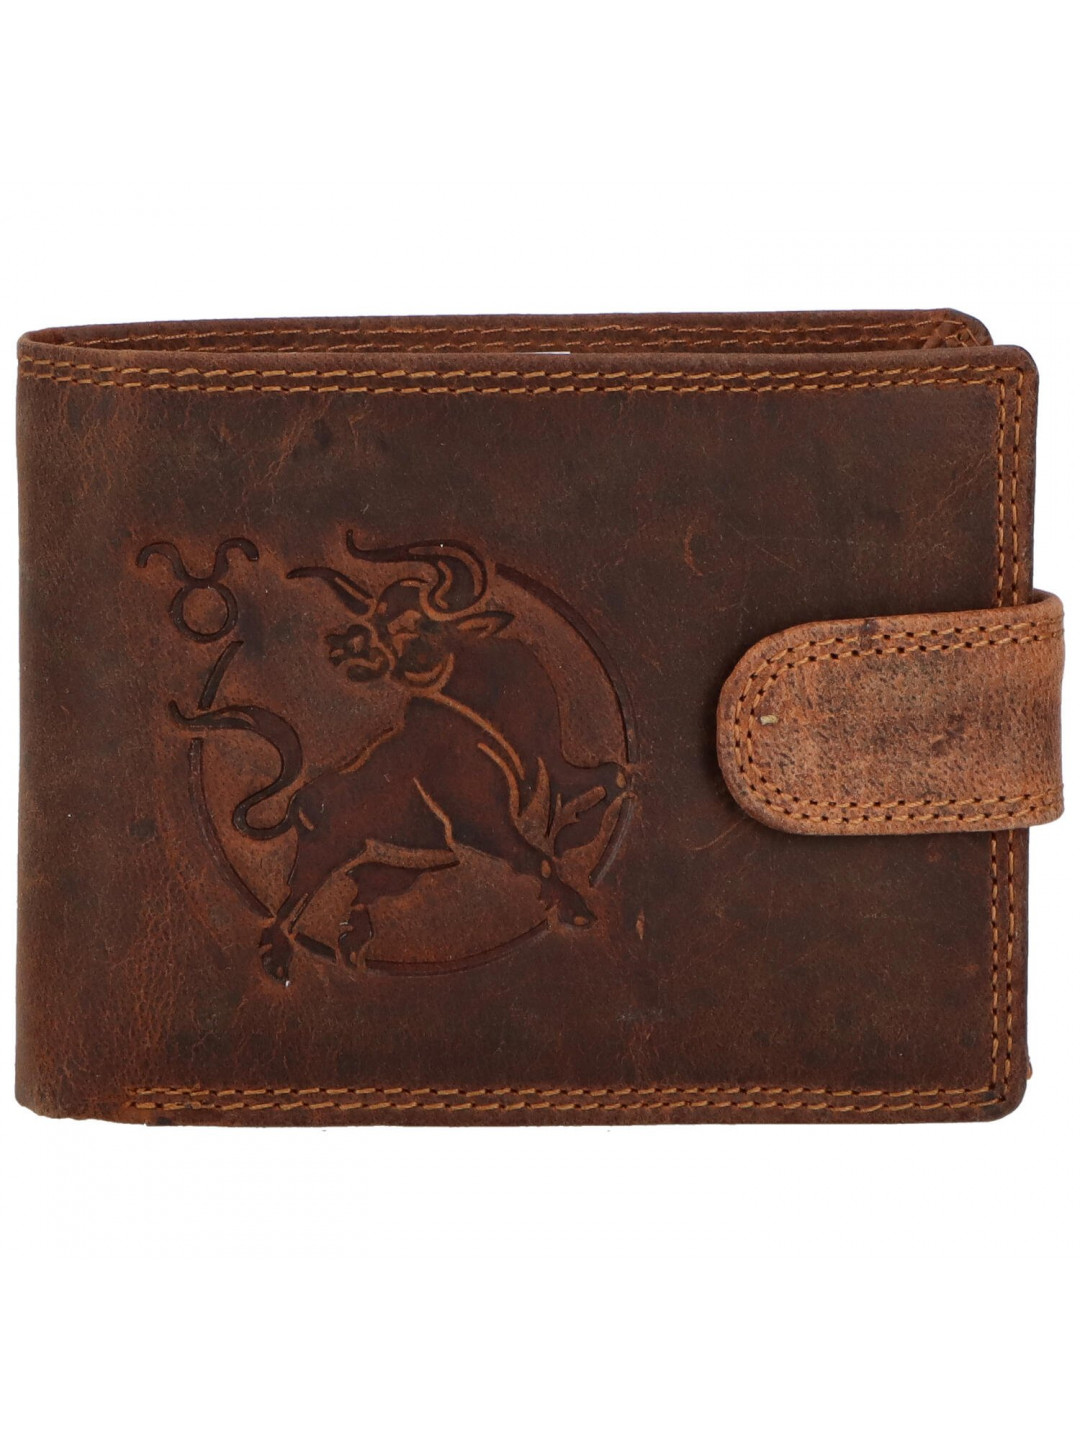 Pánská kožená peněženka hnědá – Delami Aroga Býk